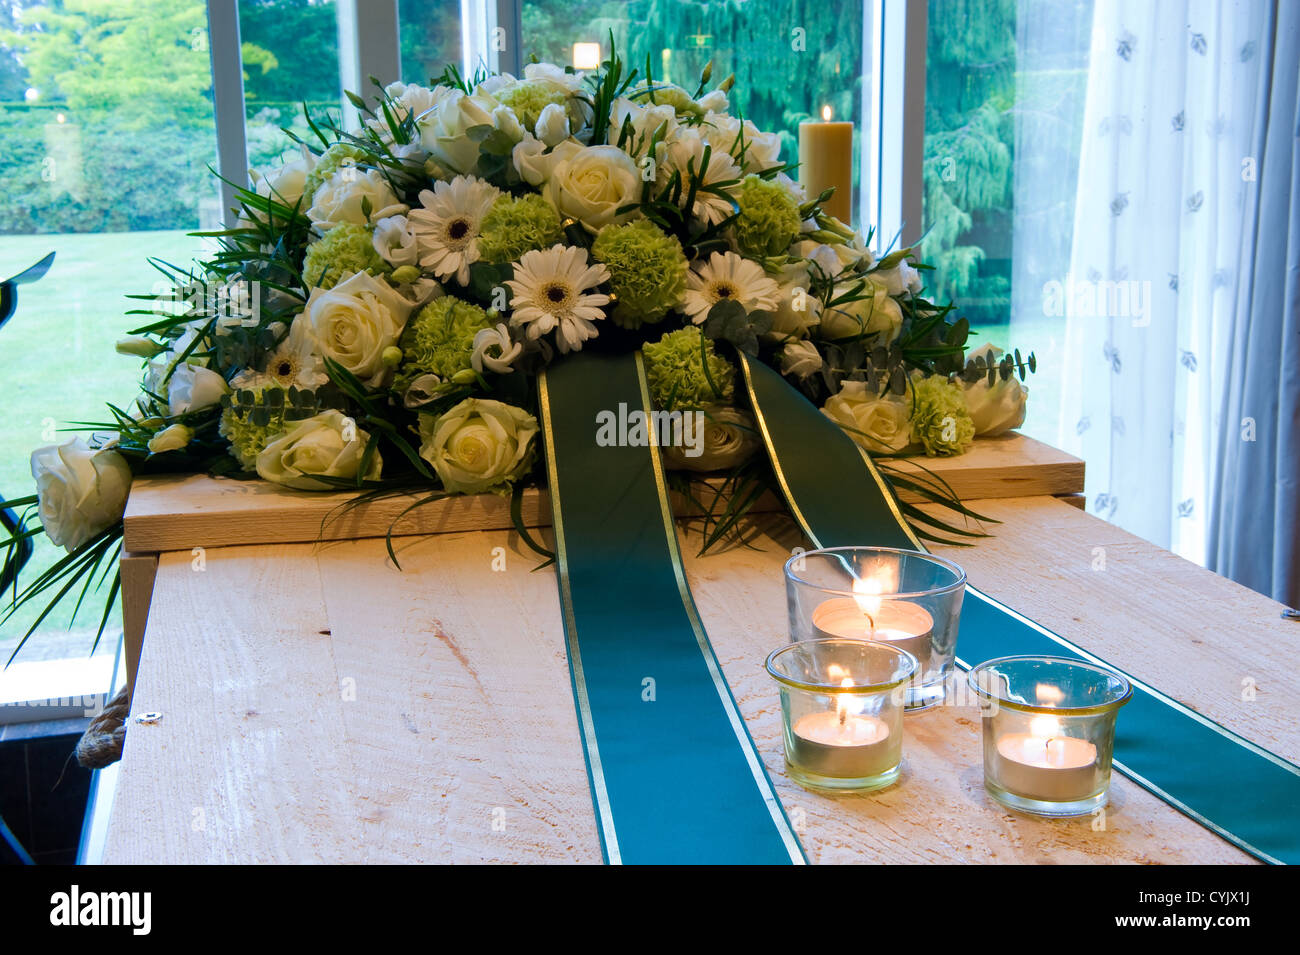 Una bara in un crematorio con una disposizione di fiori e candele accese su di esso Foto Stock